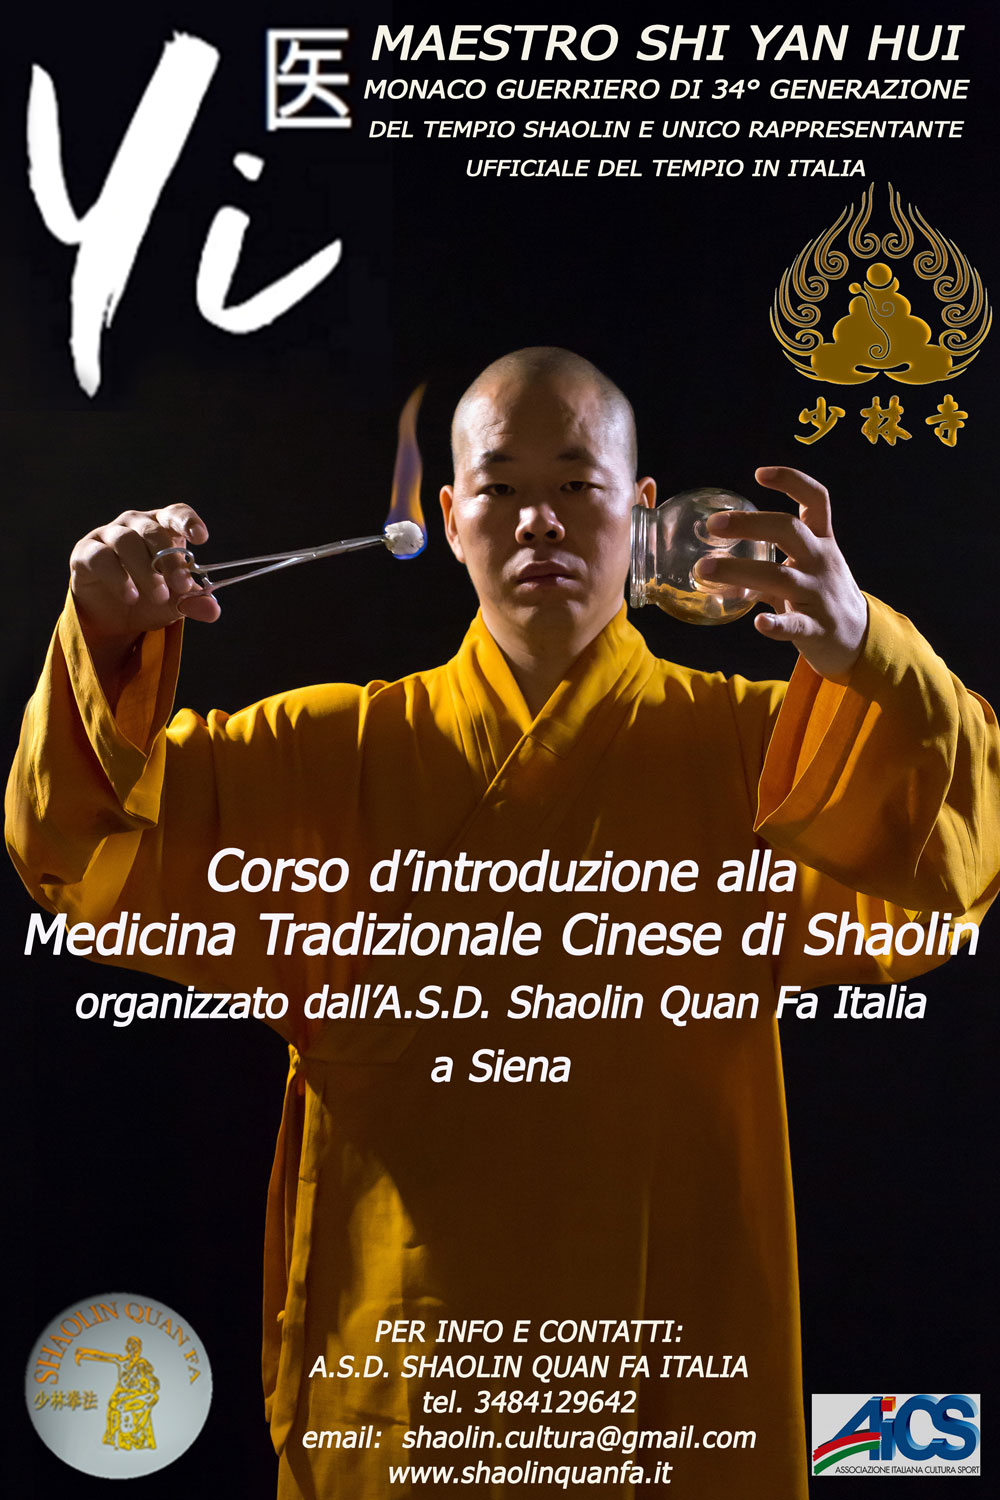 Corso d'introduzione alla Medicina Tradizionale Cinese di Shaolin a Siena